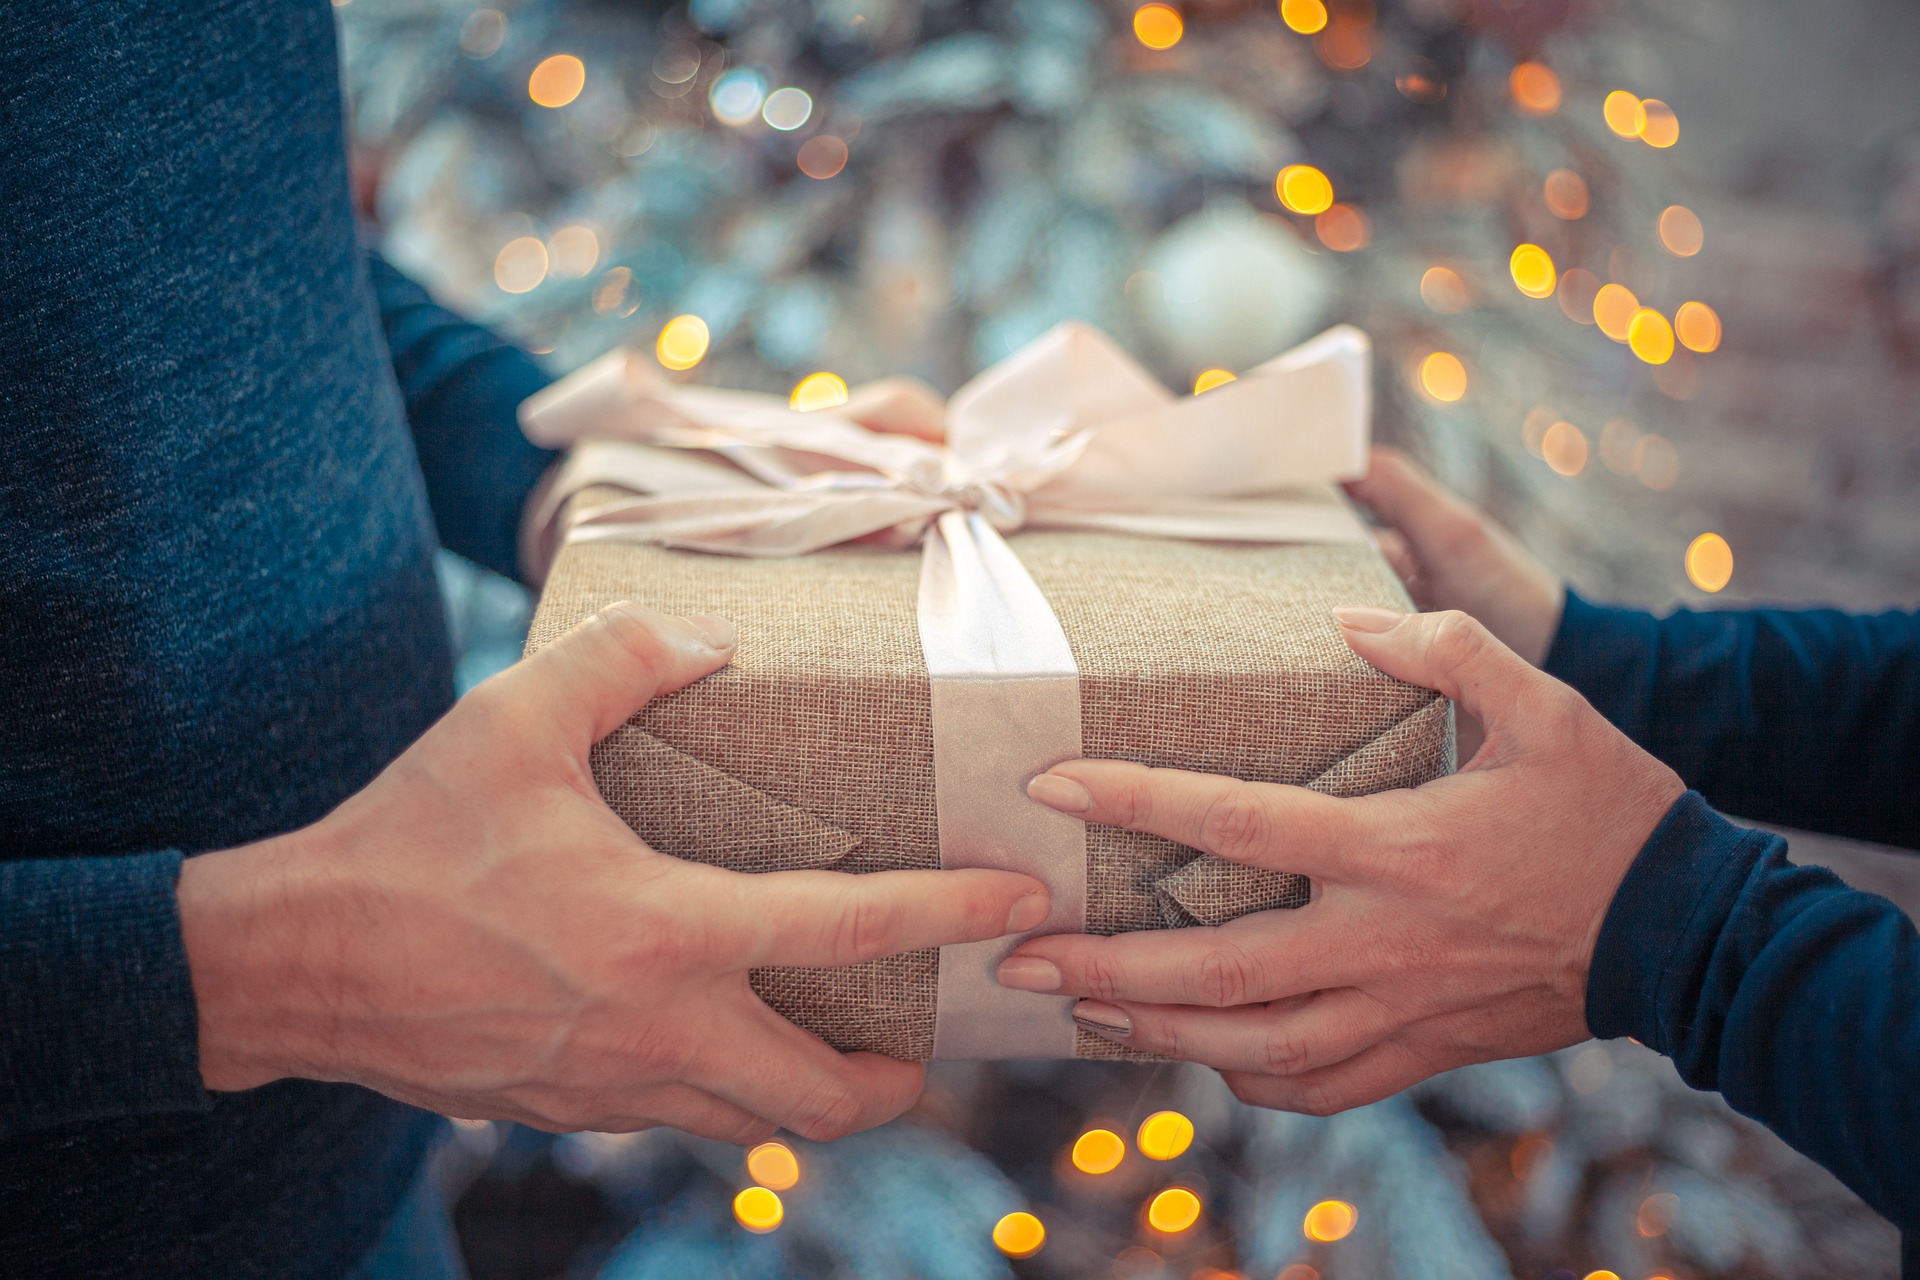 La mitad de los consumidores españoles gastará entre 200 y 500 euros en las compras de Navidad